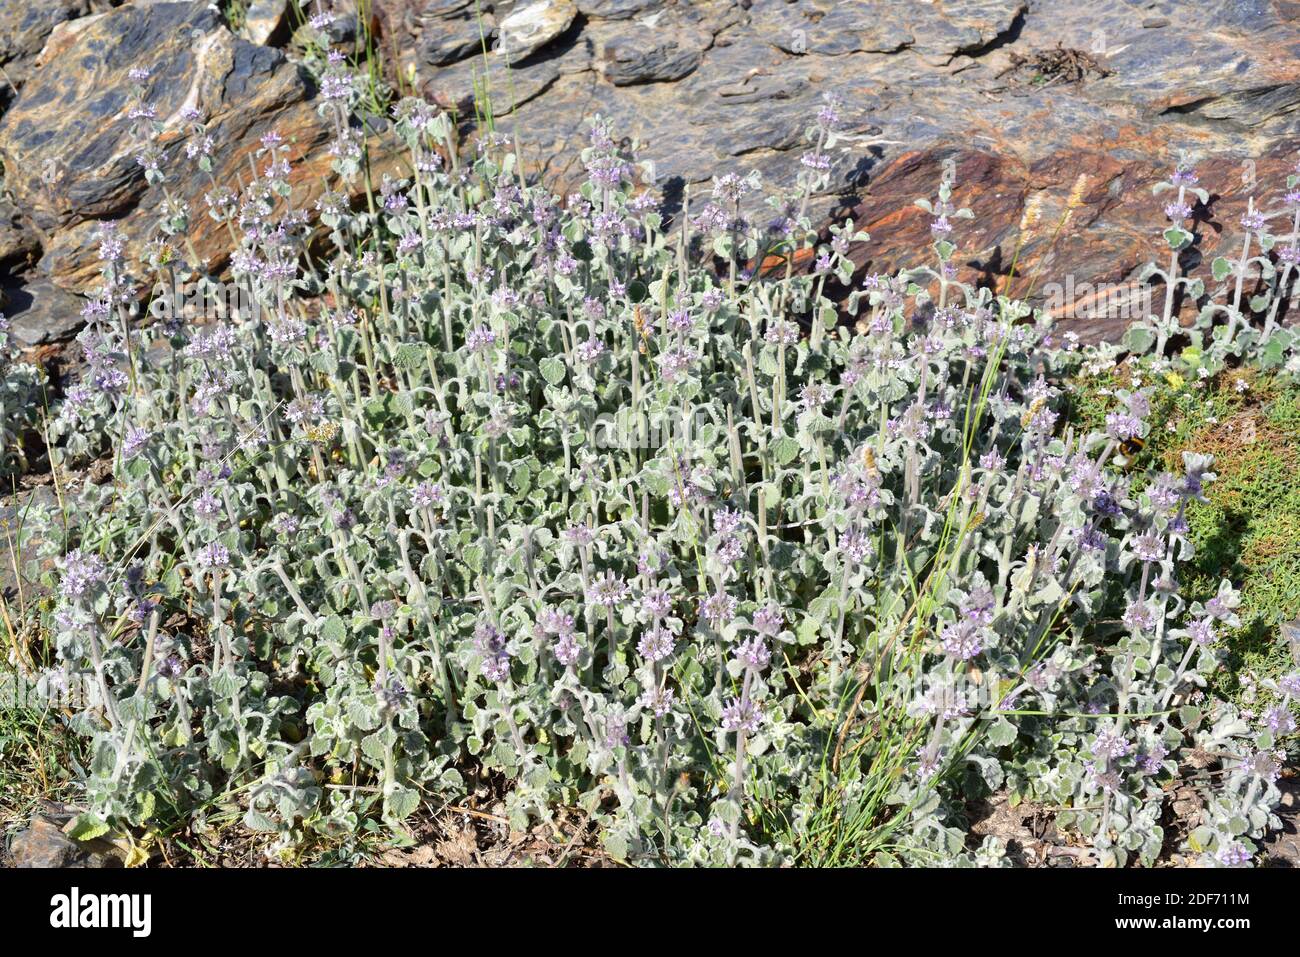 Marrubio nevado (Marrubium supinum) es una hierba perenne endémica del este de España y del noroeste de África. Esta foto fue tomada en Sierra Nevada Foto de stock